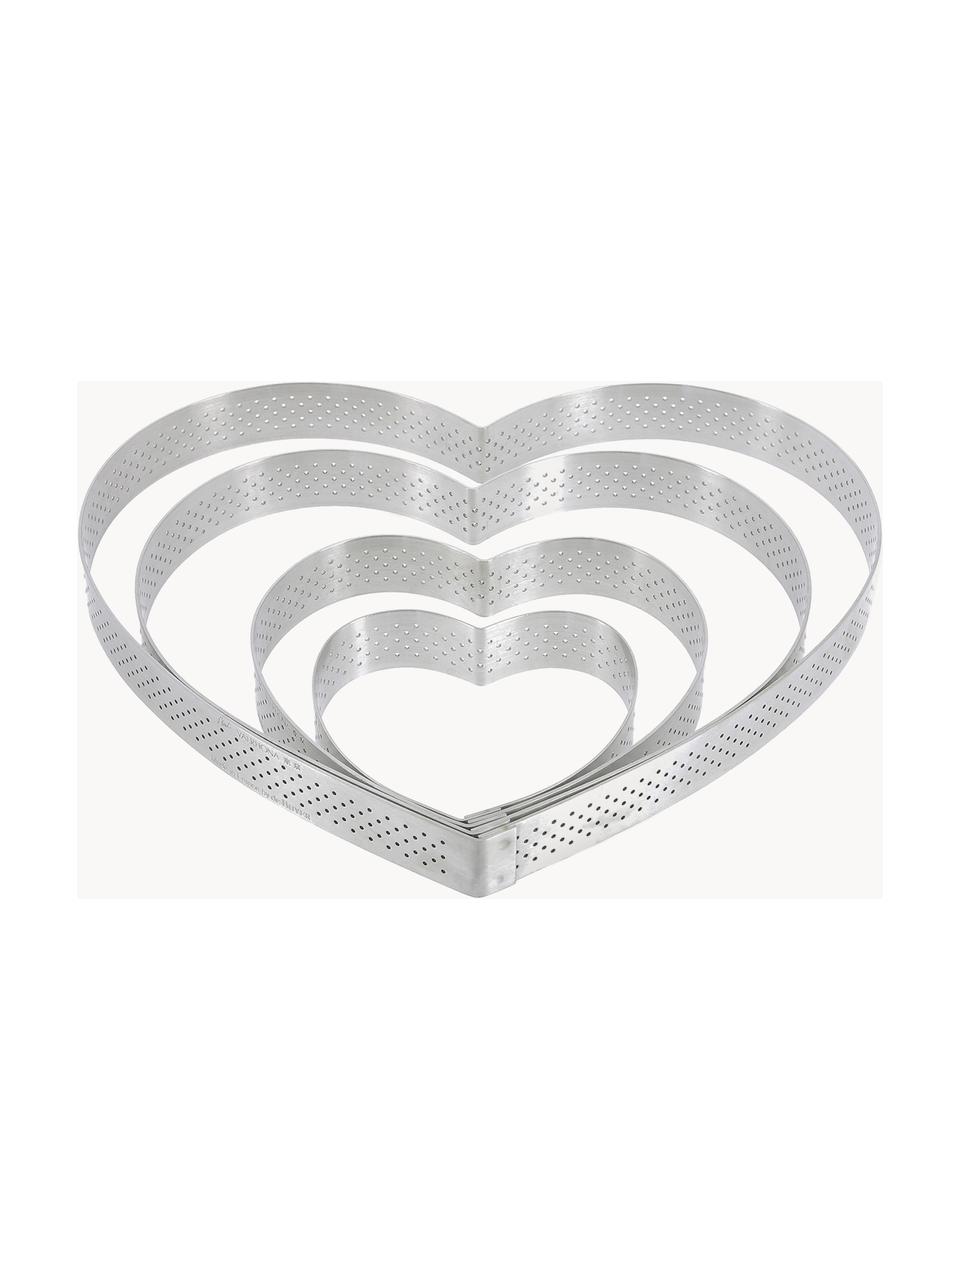 Bakvorm Lovely in de vorm van een hart van edelstaal, Edelstaal, Zilverkleurig, Ø 21 x H 2 cm